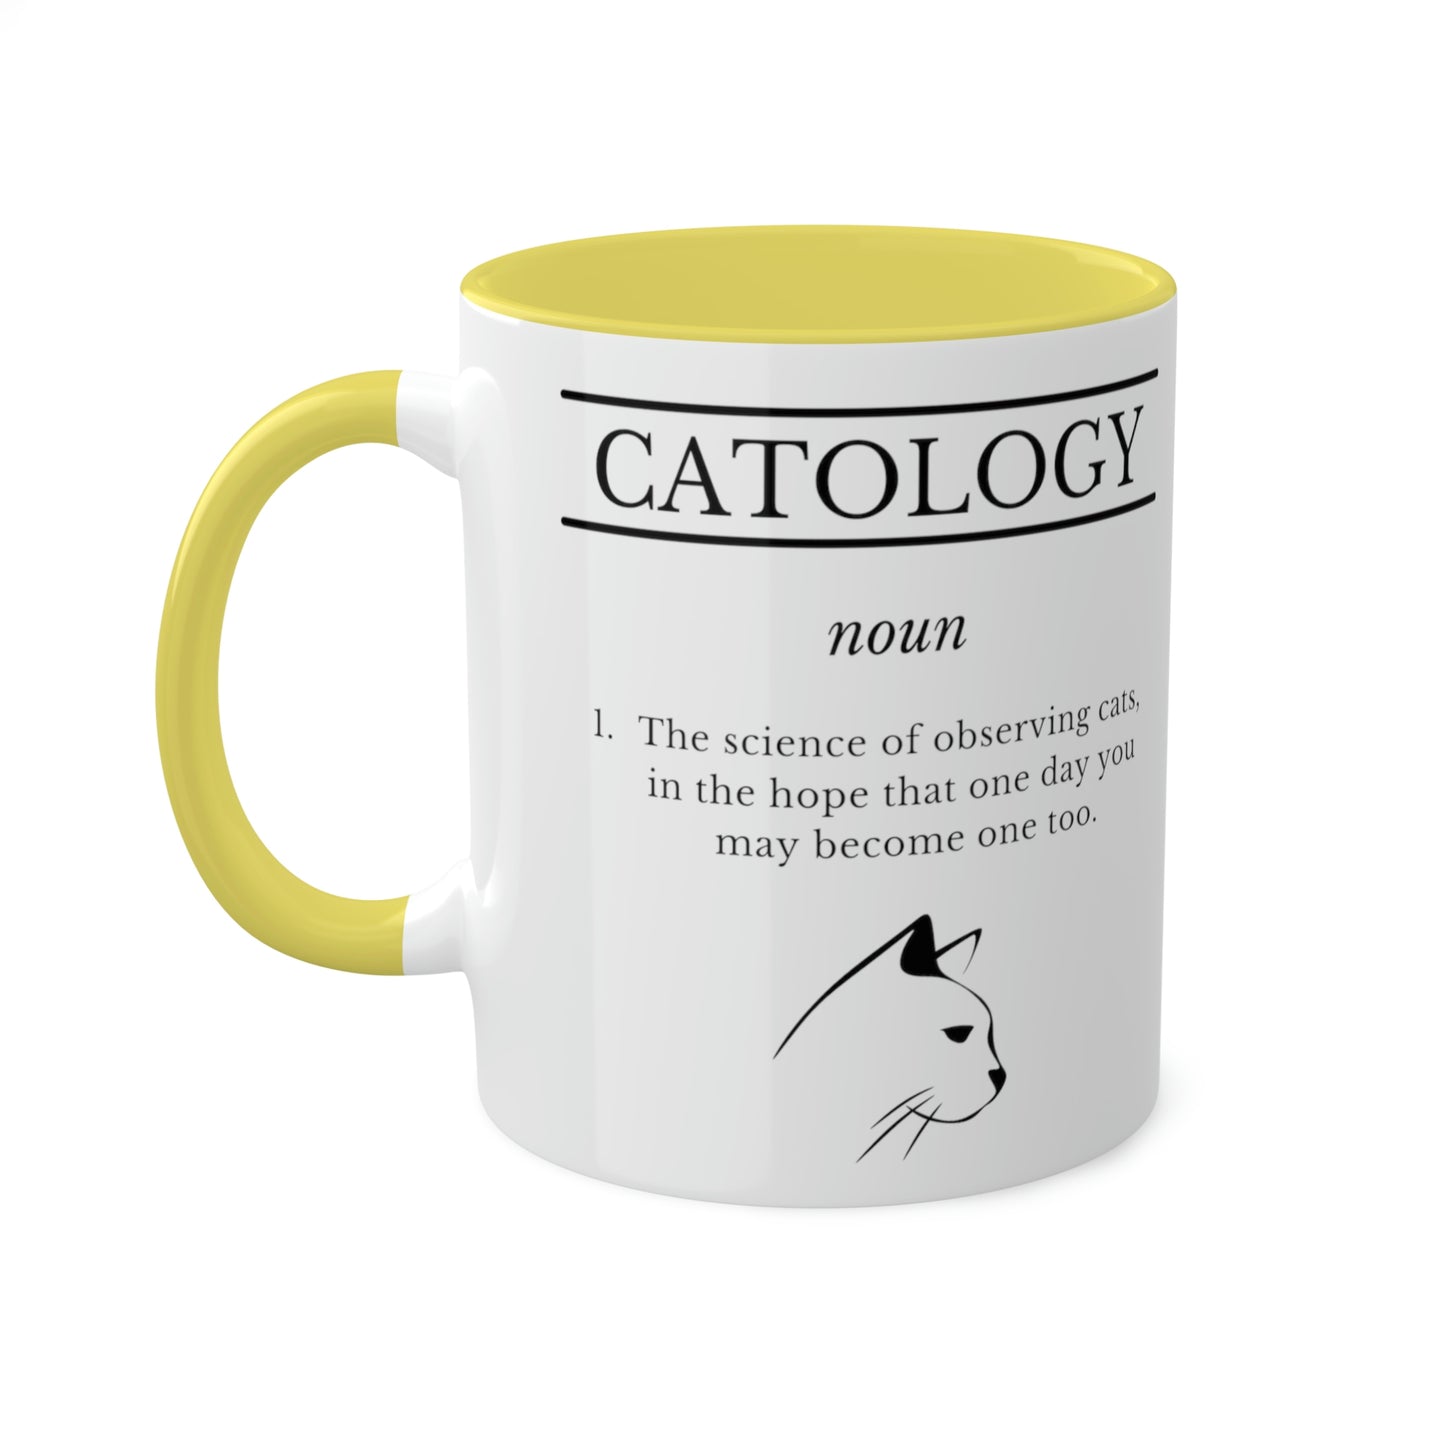 Catology Mug